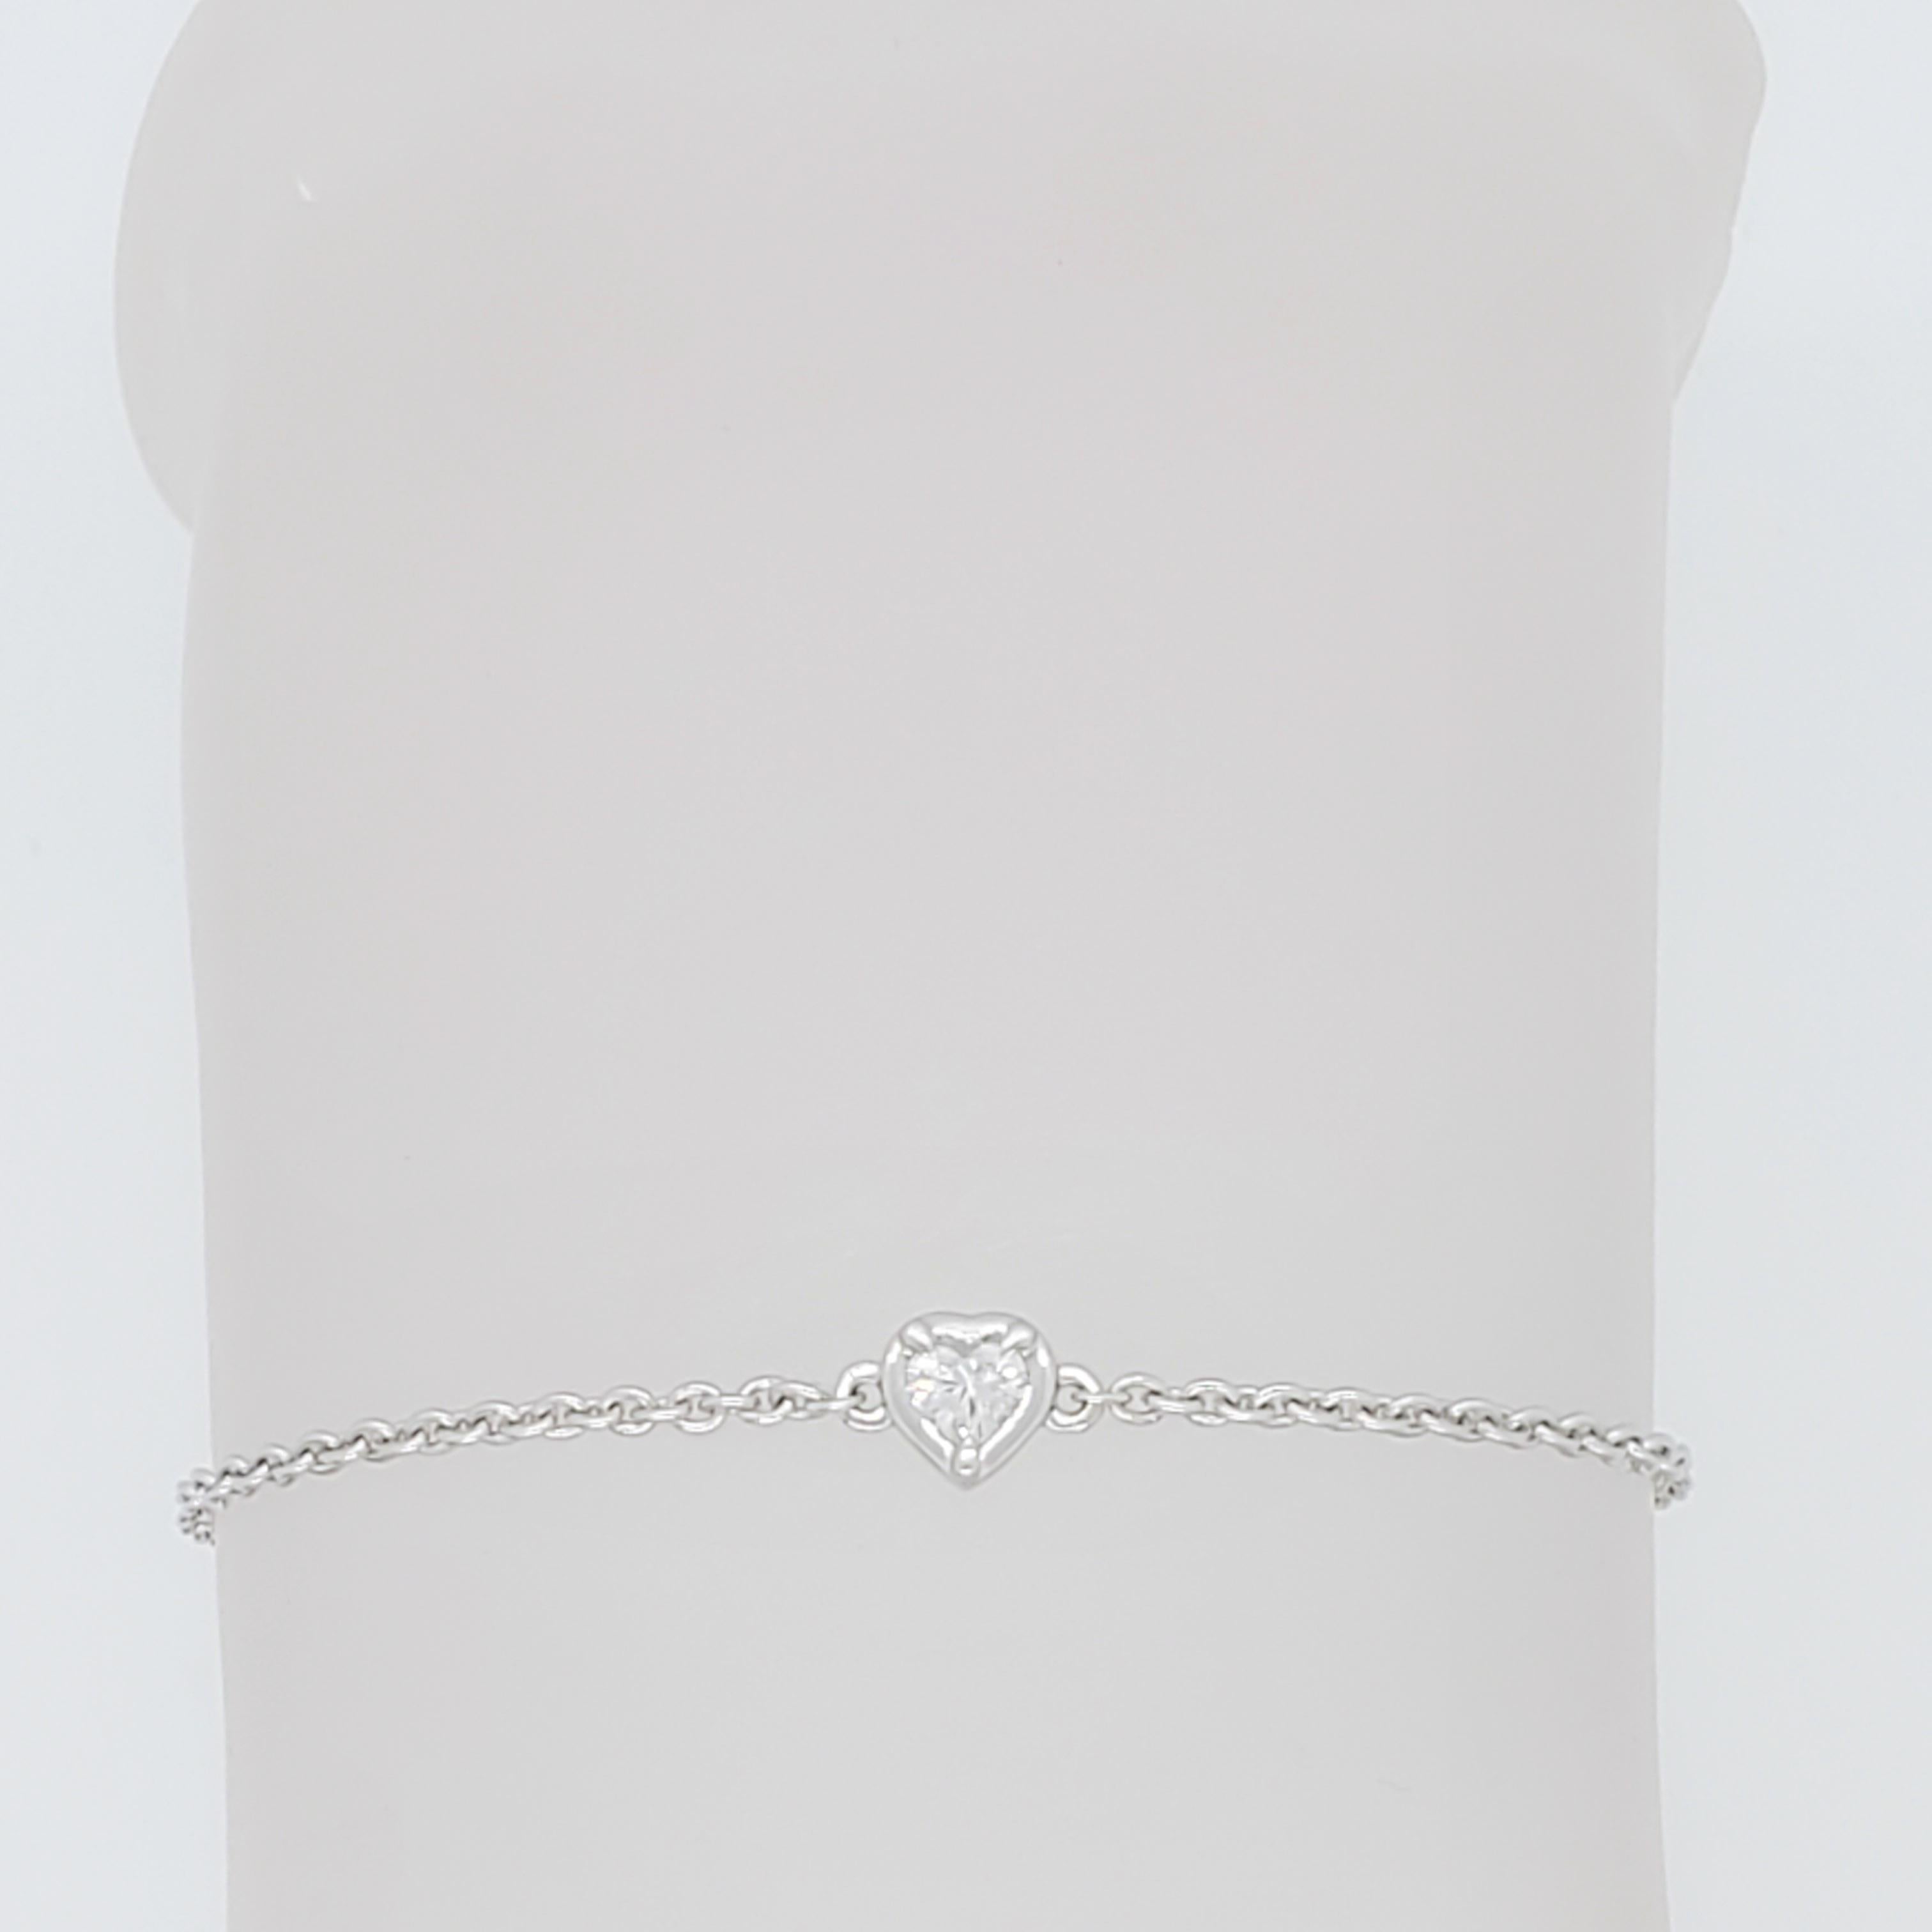 Belle et simple lunette en diamant blanc taille cœur de 0,15 ct. sertie d'une chaîne en or blanc 18 carats.  La longueur est de 7,25.